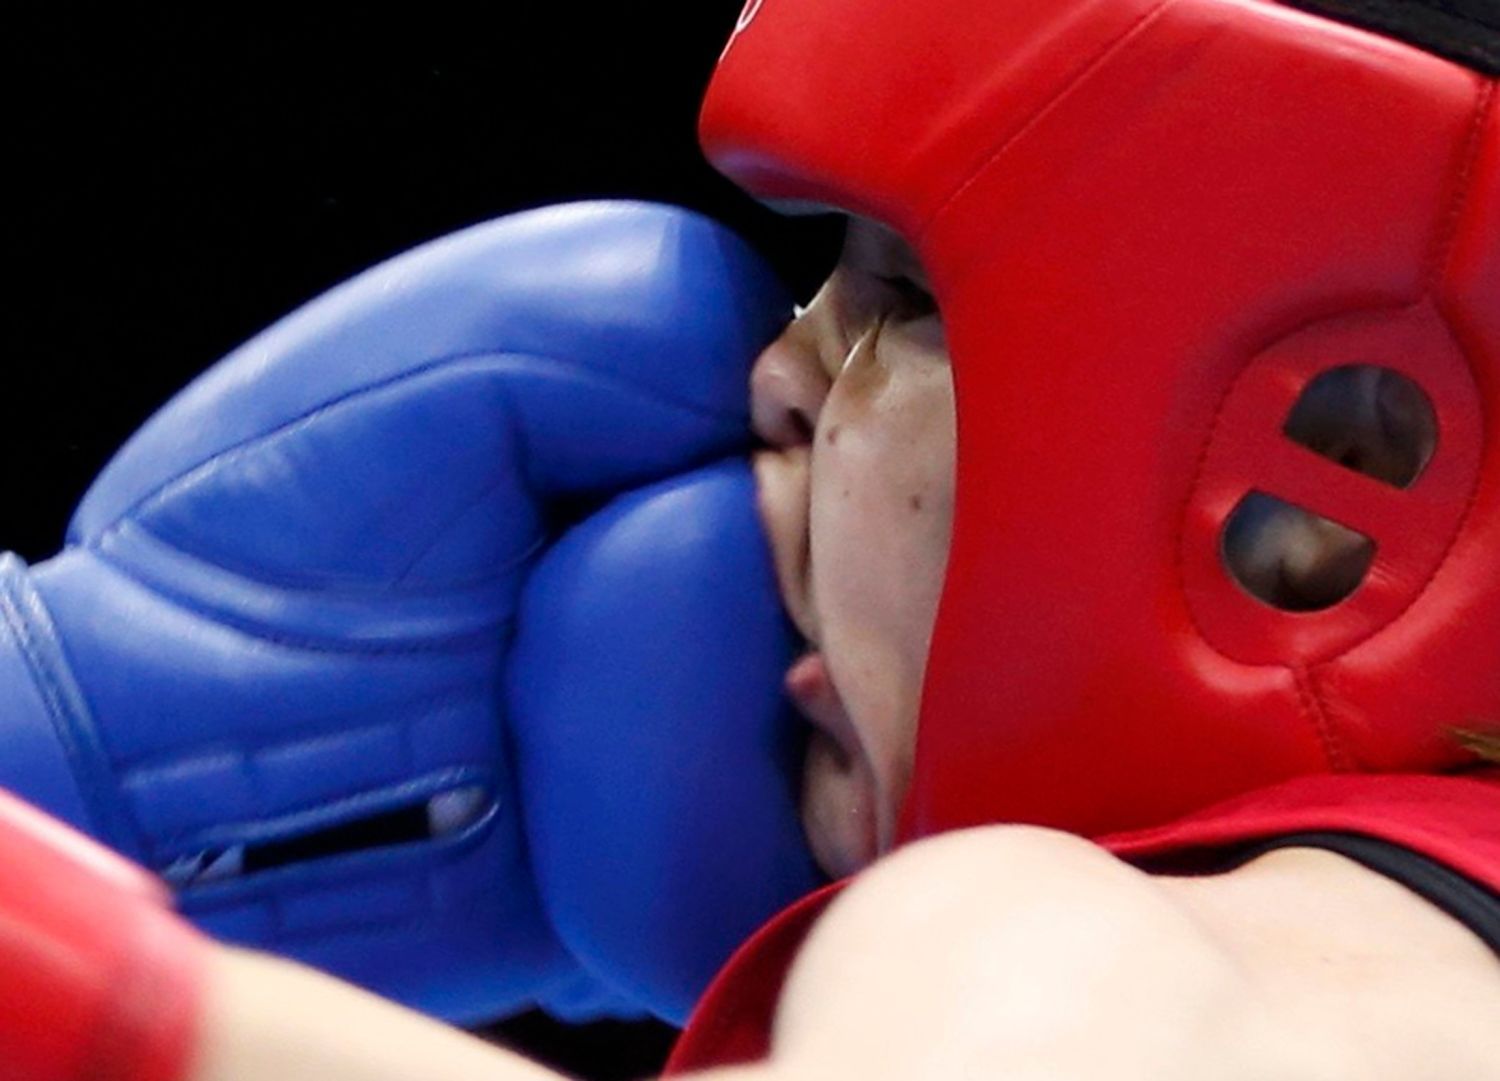 Irka Katie Tylorová (v červeném) boxuje s Tádžikistánkou Mavzunou Čorievovou.